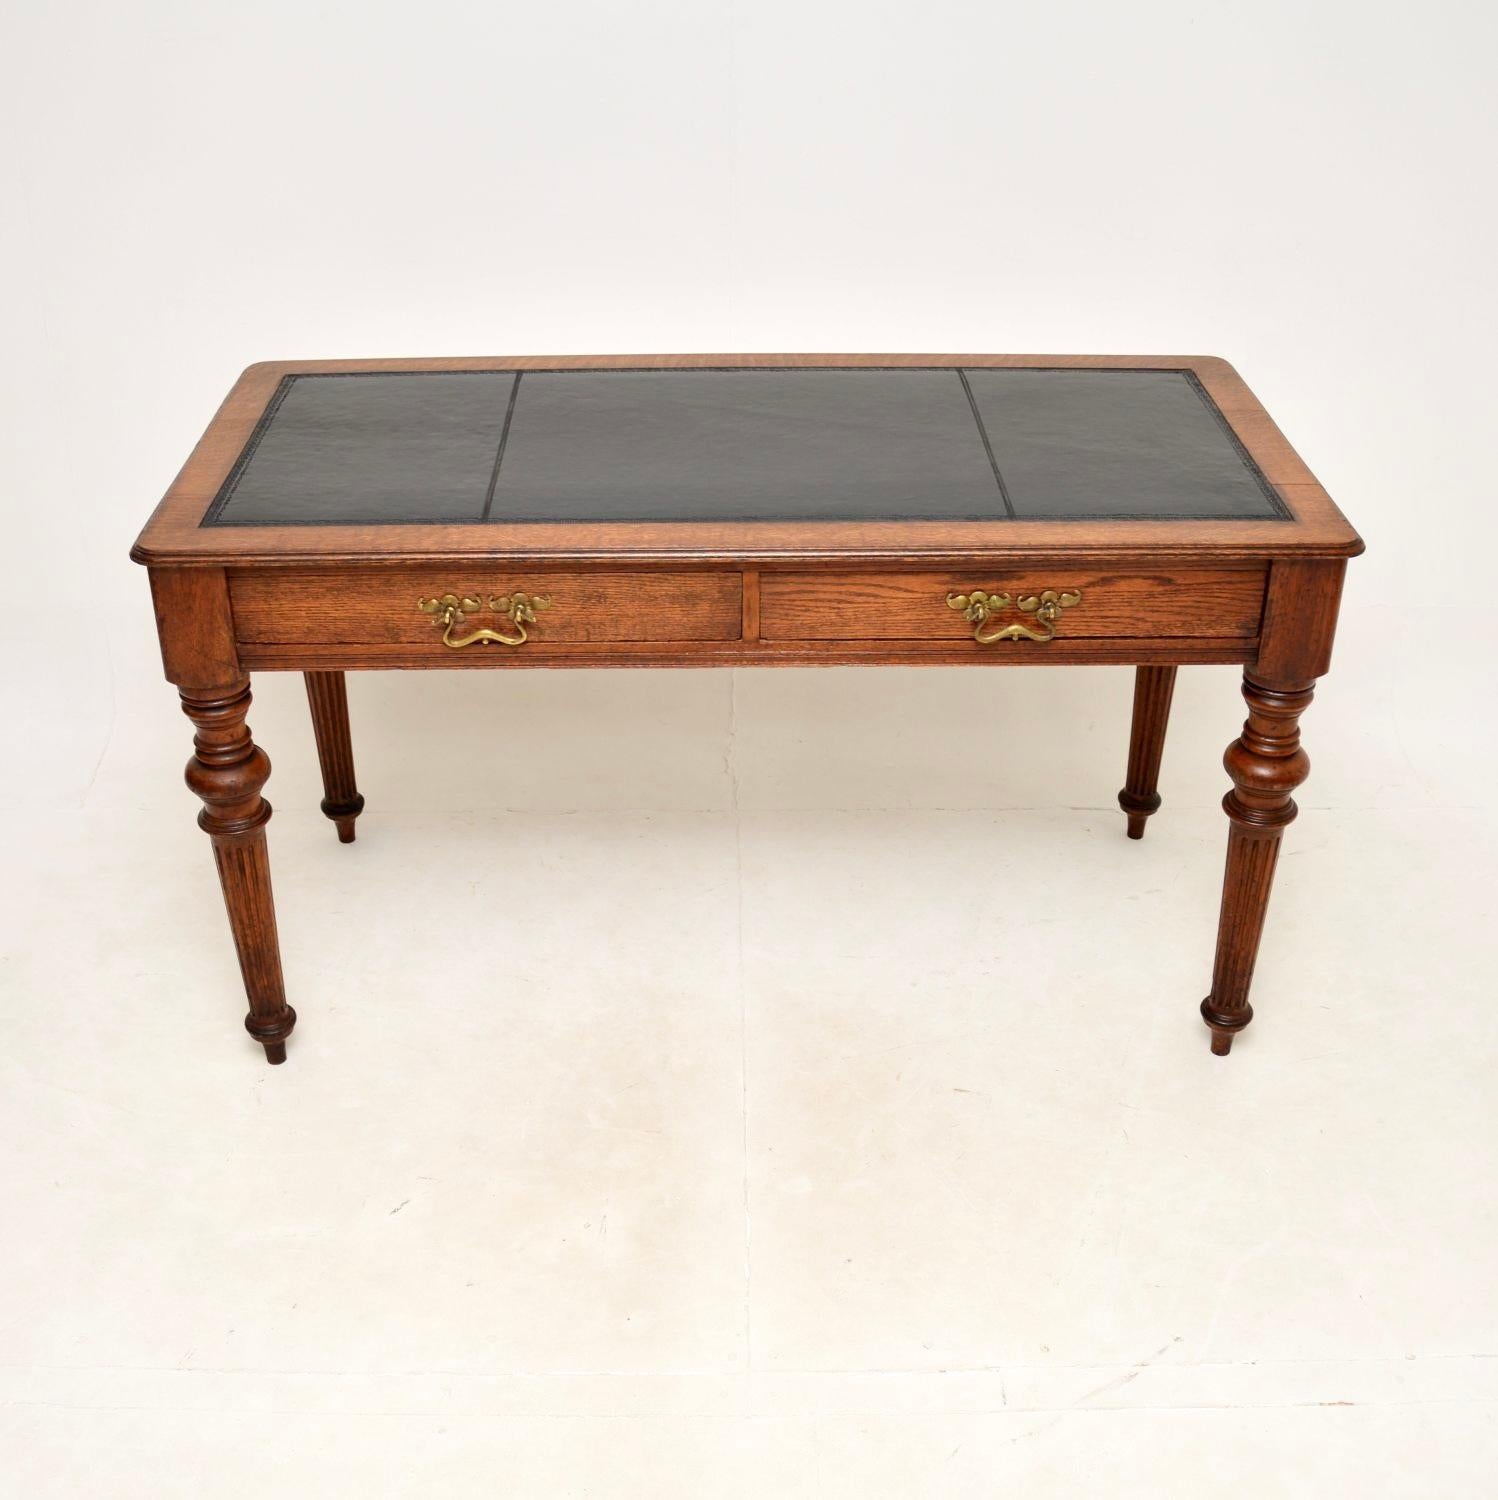 Une impressionnante table à écrire / bureau victorienne en chêne avec dessus en cuir. Fabriqué en Angleterre, il date de la période 1870-1890.

Il est d'une superbe qualité, en chêne massif, avec une belle surface d'écriture en cuir noir délavé. Il